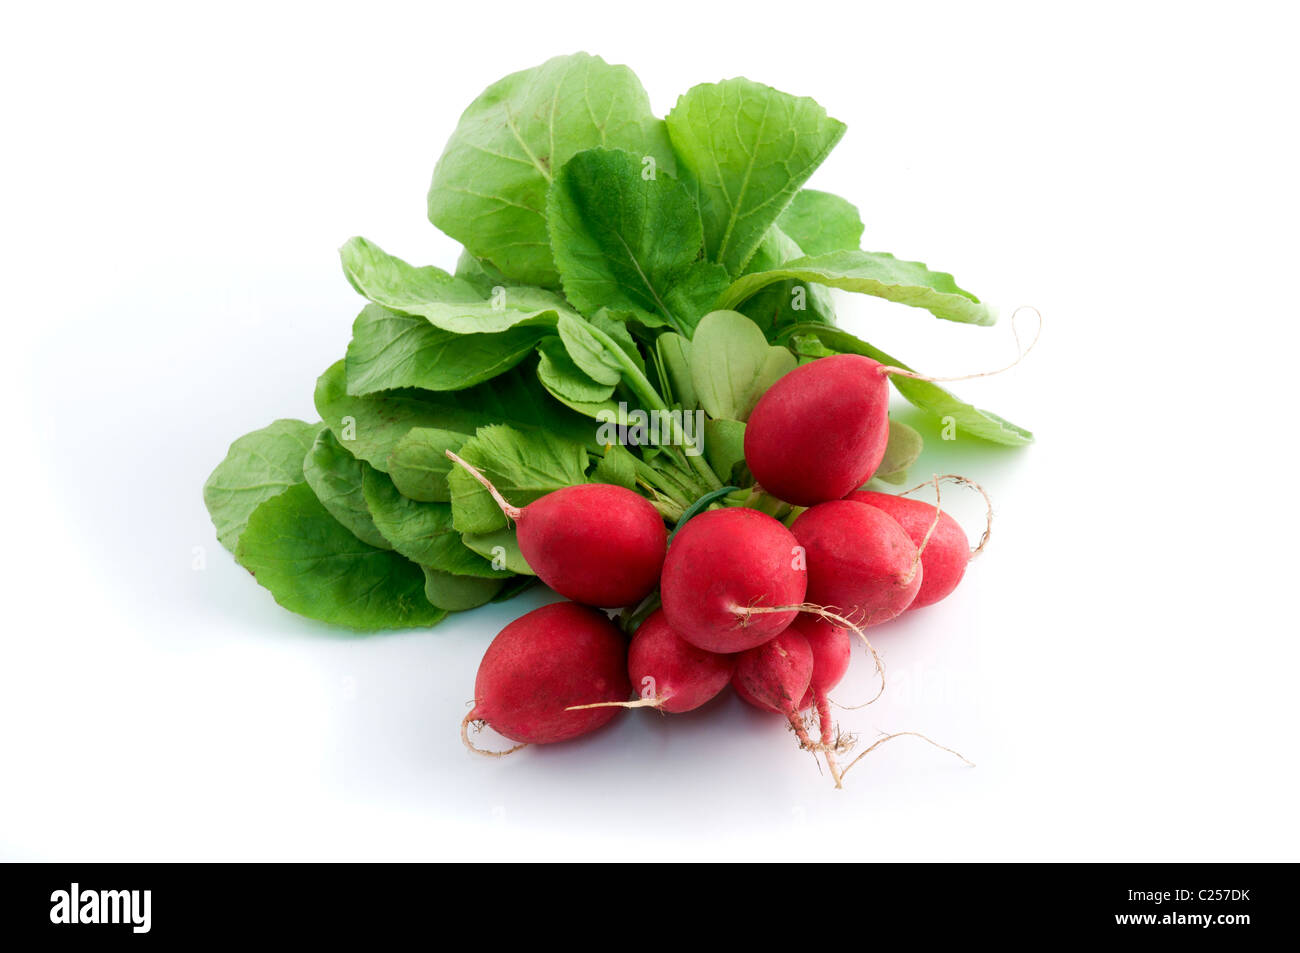 European radish on a white background Stock Photo